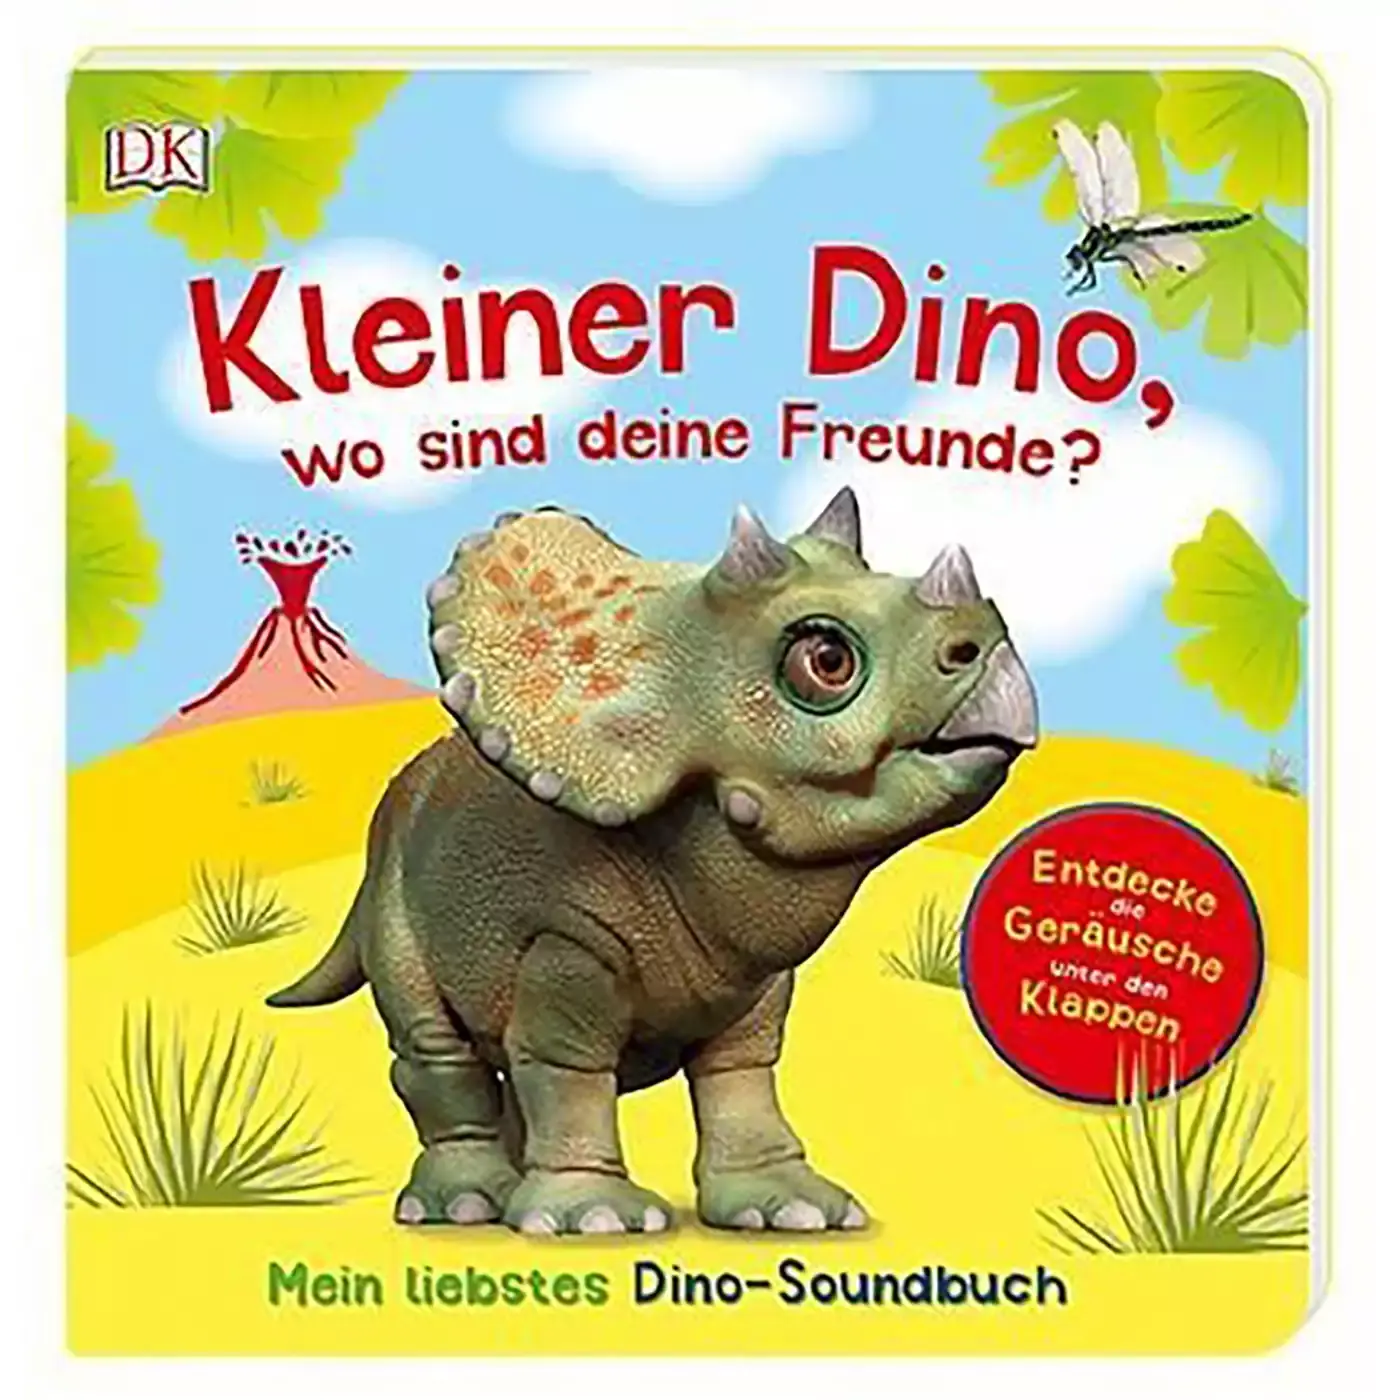 Kleiner Dino, wo sind deine Freunde? DK 2000577520602 3